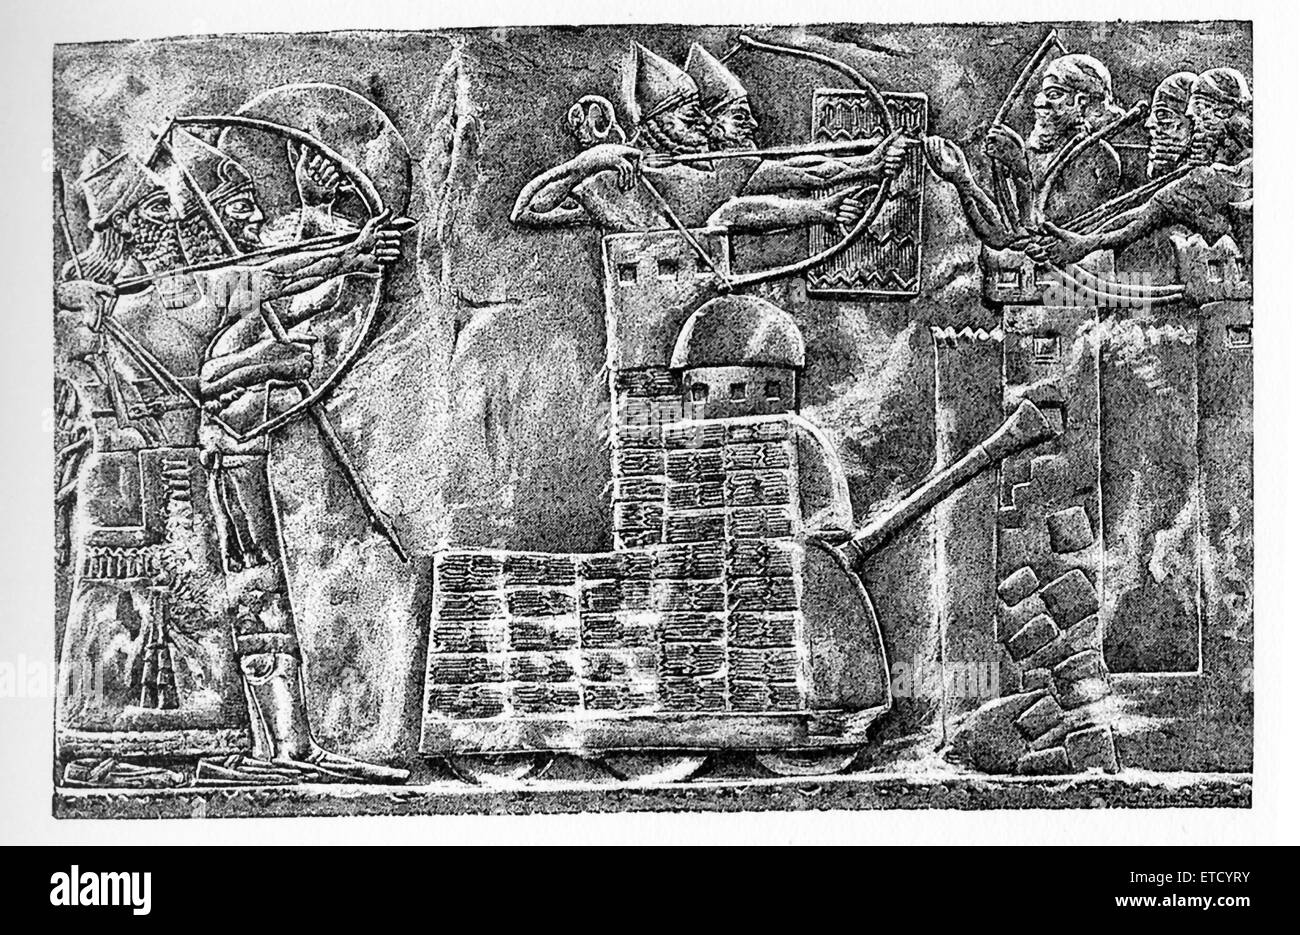 Diese Zeichnung ist von Henri Faucher-Gudin und 1916-Buchreihe "Geschichte von Ägypten" von französischen Ägyptologen Gaston Maspero begleitet. Die Zeichnung basiert auf einem Basrelief aus Nimrud, die jetzt im britischen Museum.It zeigt eine assyrische Türmen Sturmbock angreifende Wände der Stadt gebracht. Männer im Turm sind Bogenschützen mit dem Ziel ihre Pfeile in der Stadt. Dahinter stehen weitere Bogenschützen. Die Stadtbewohner haben ihre Mauern gebaut und Bogenschützen als Schutz verwenden. Der assyrische König Ashurnasirpal III (883-859 v. Chr.) hatte seinen Palast nach Nimrud (alte Kalhu) im heutigen Irak. Stockfoto